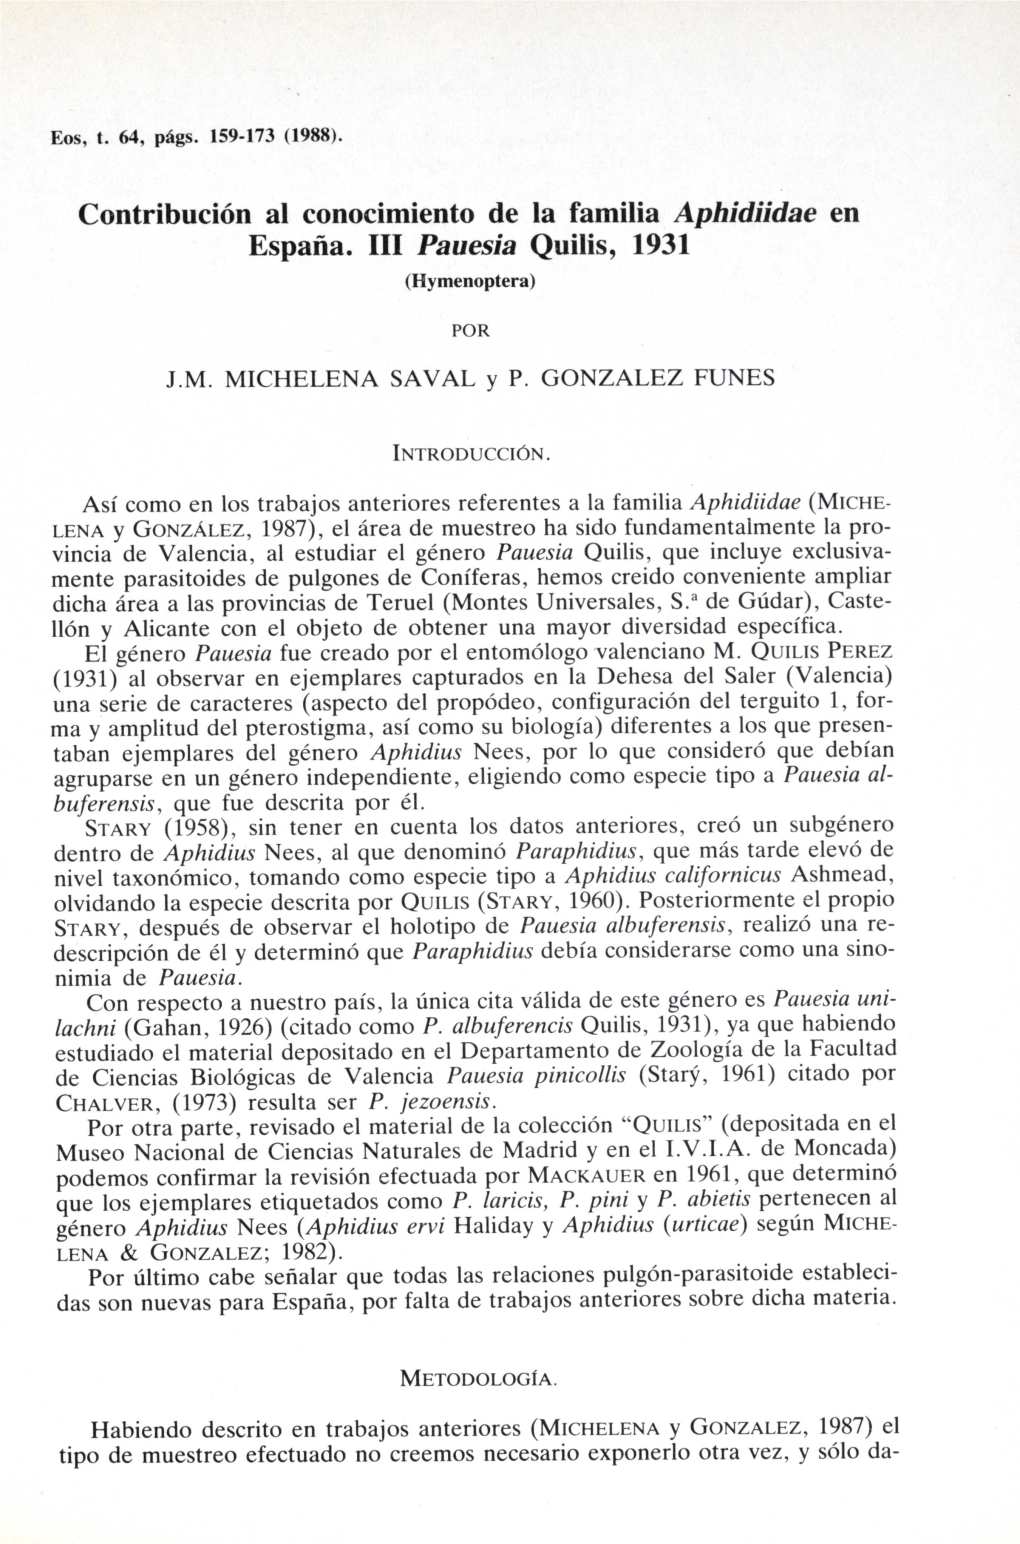 Contribución Al Conocimiento De La Familia Aphidiidae En España. III Pauesia Quilis, 1931 (Hymenoptera)